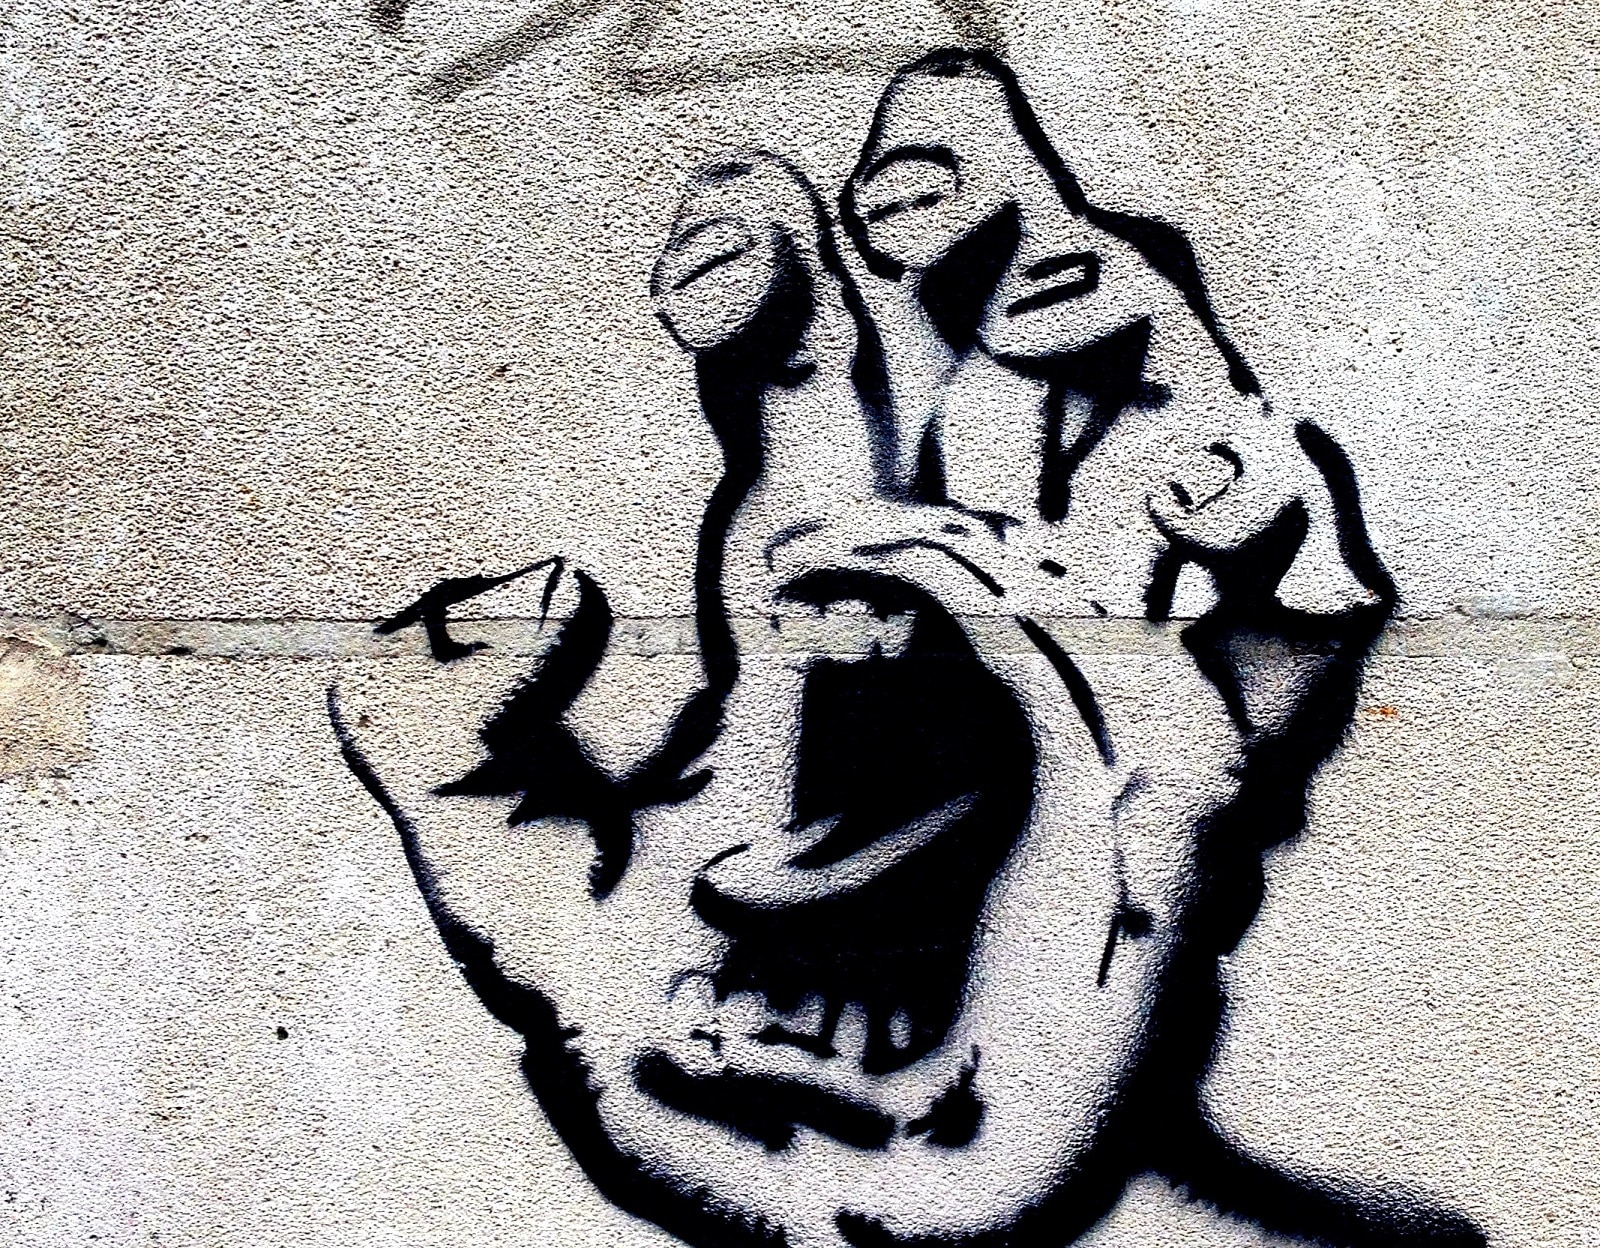 graffiti jossa suu kädessä